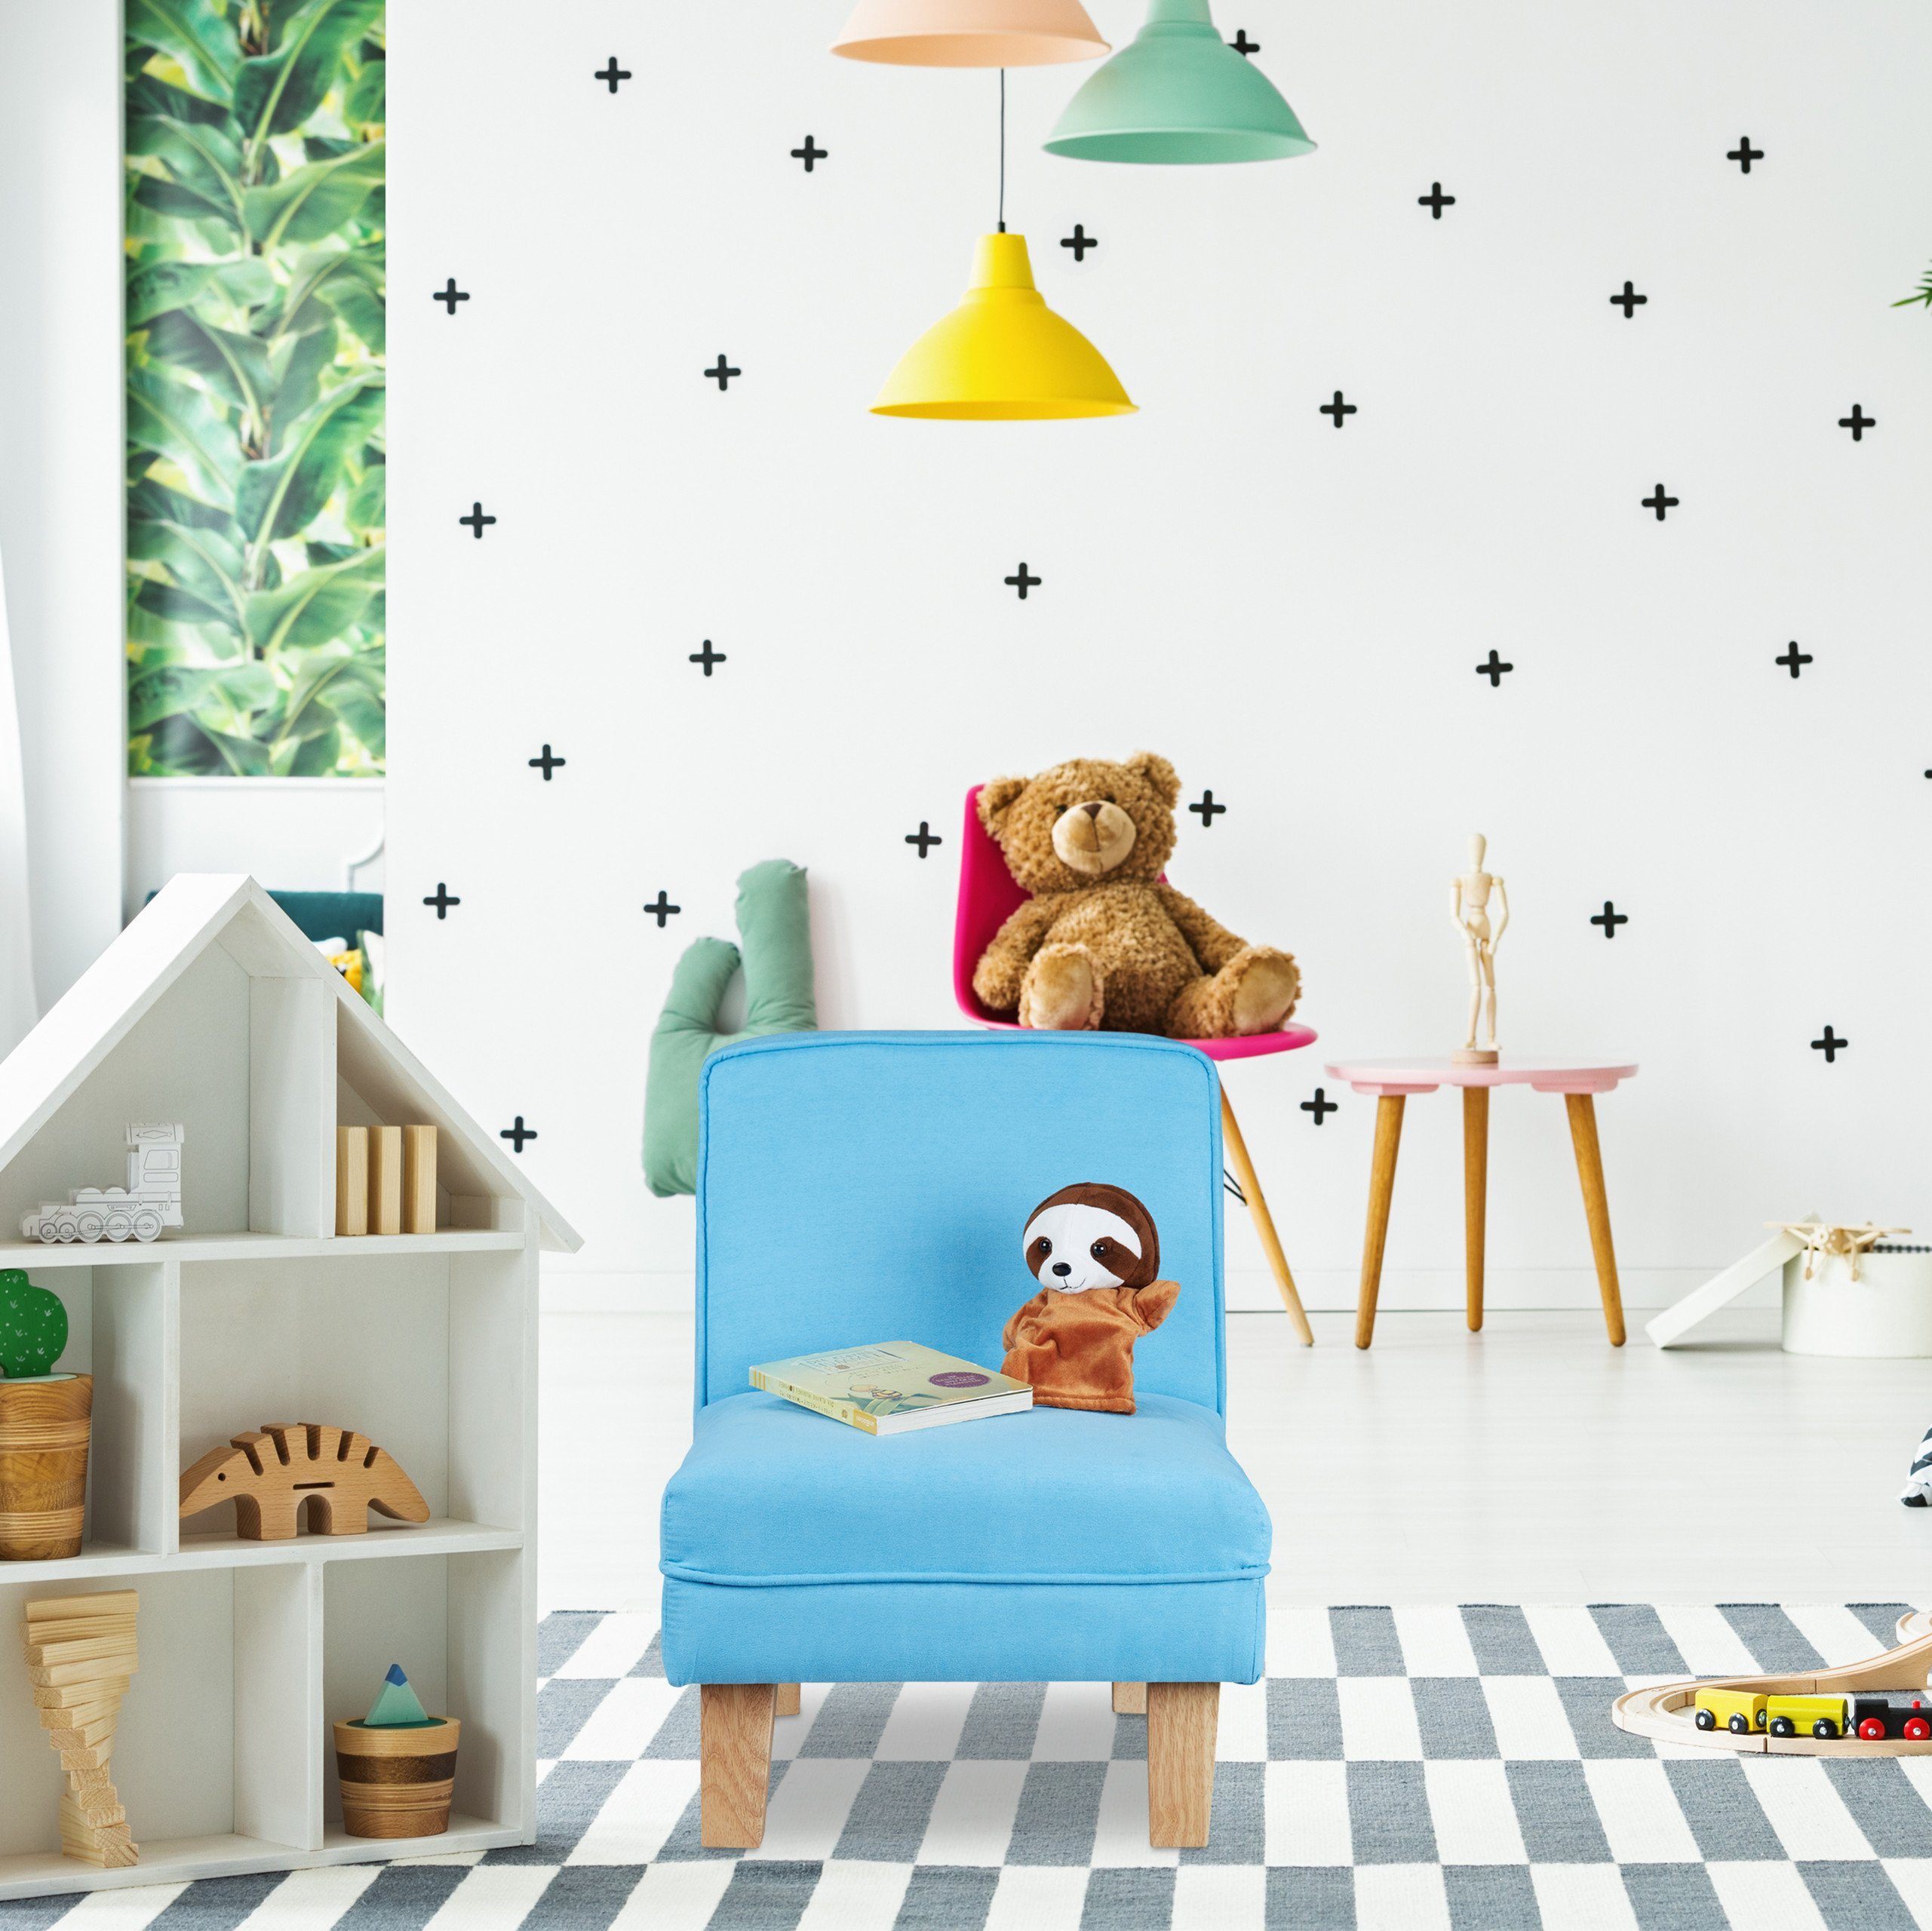 Hellbraun Holzfüßen, Sessel Blau mit relaxdays Kindersessel Hellblau